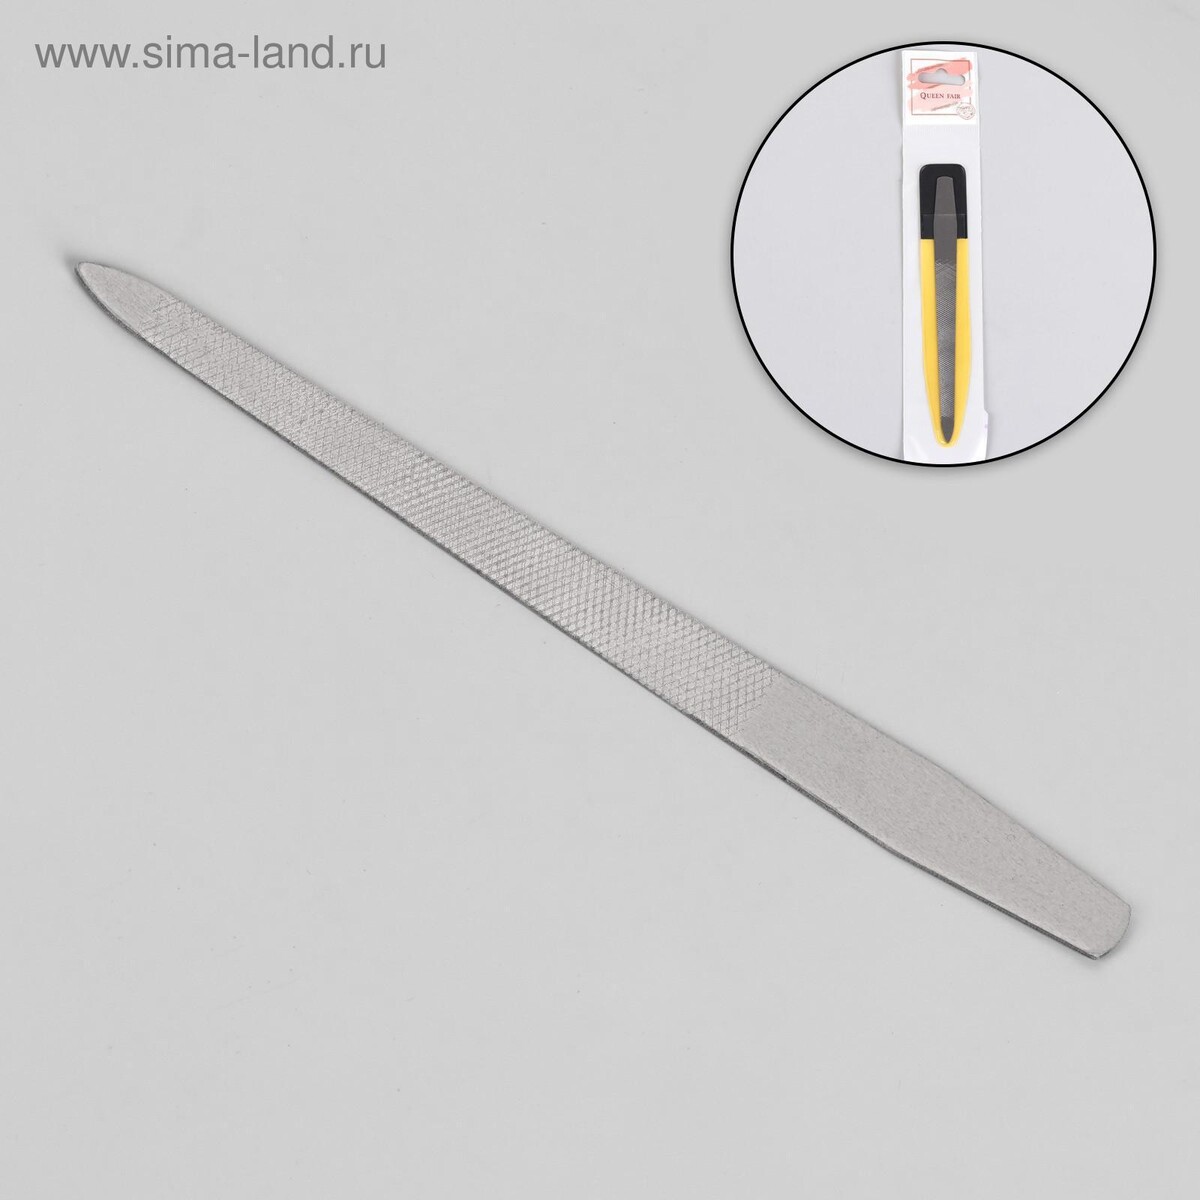 Пилка металлическая для ногтей, 13,5 см, в чехле, цвет серебристый пилка металлическая для ногтей перфорированная 15 см